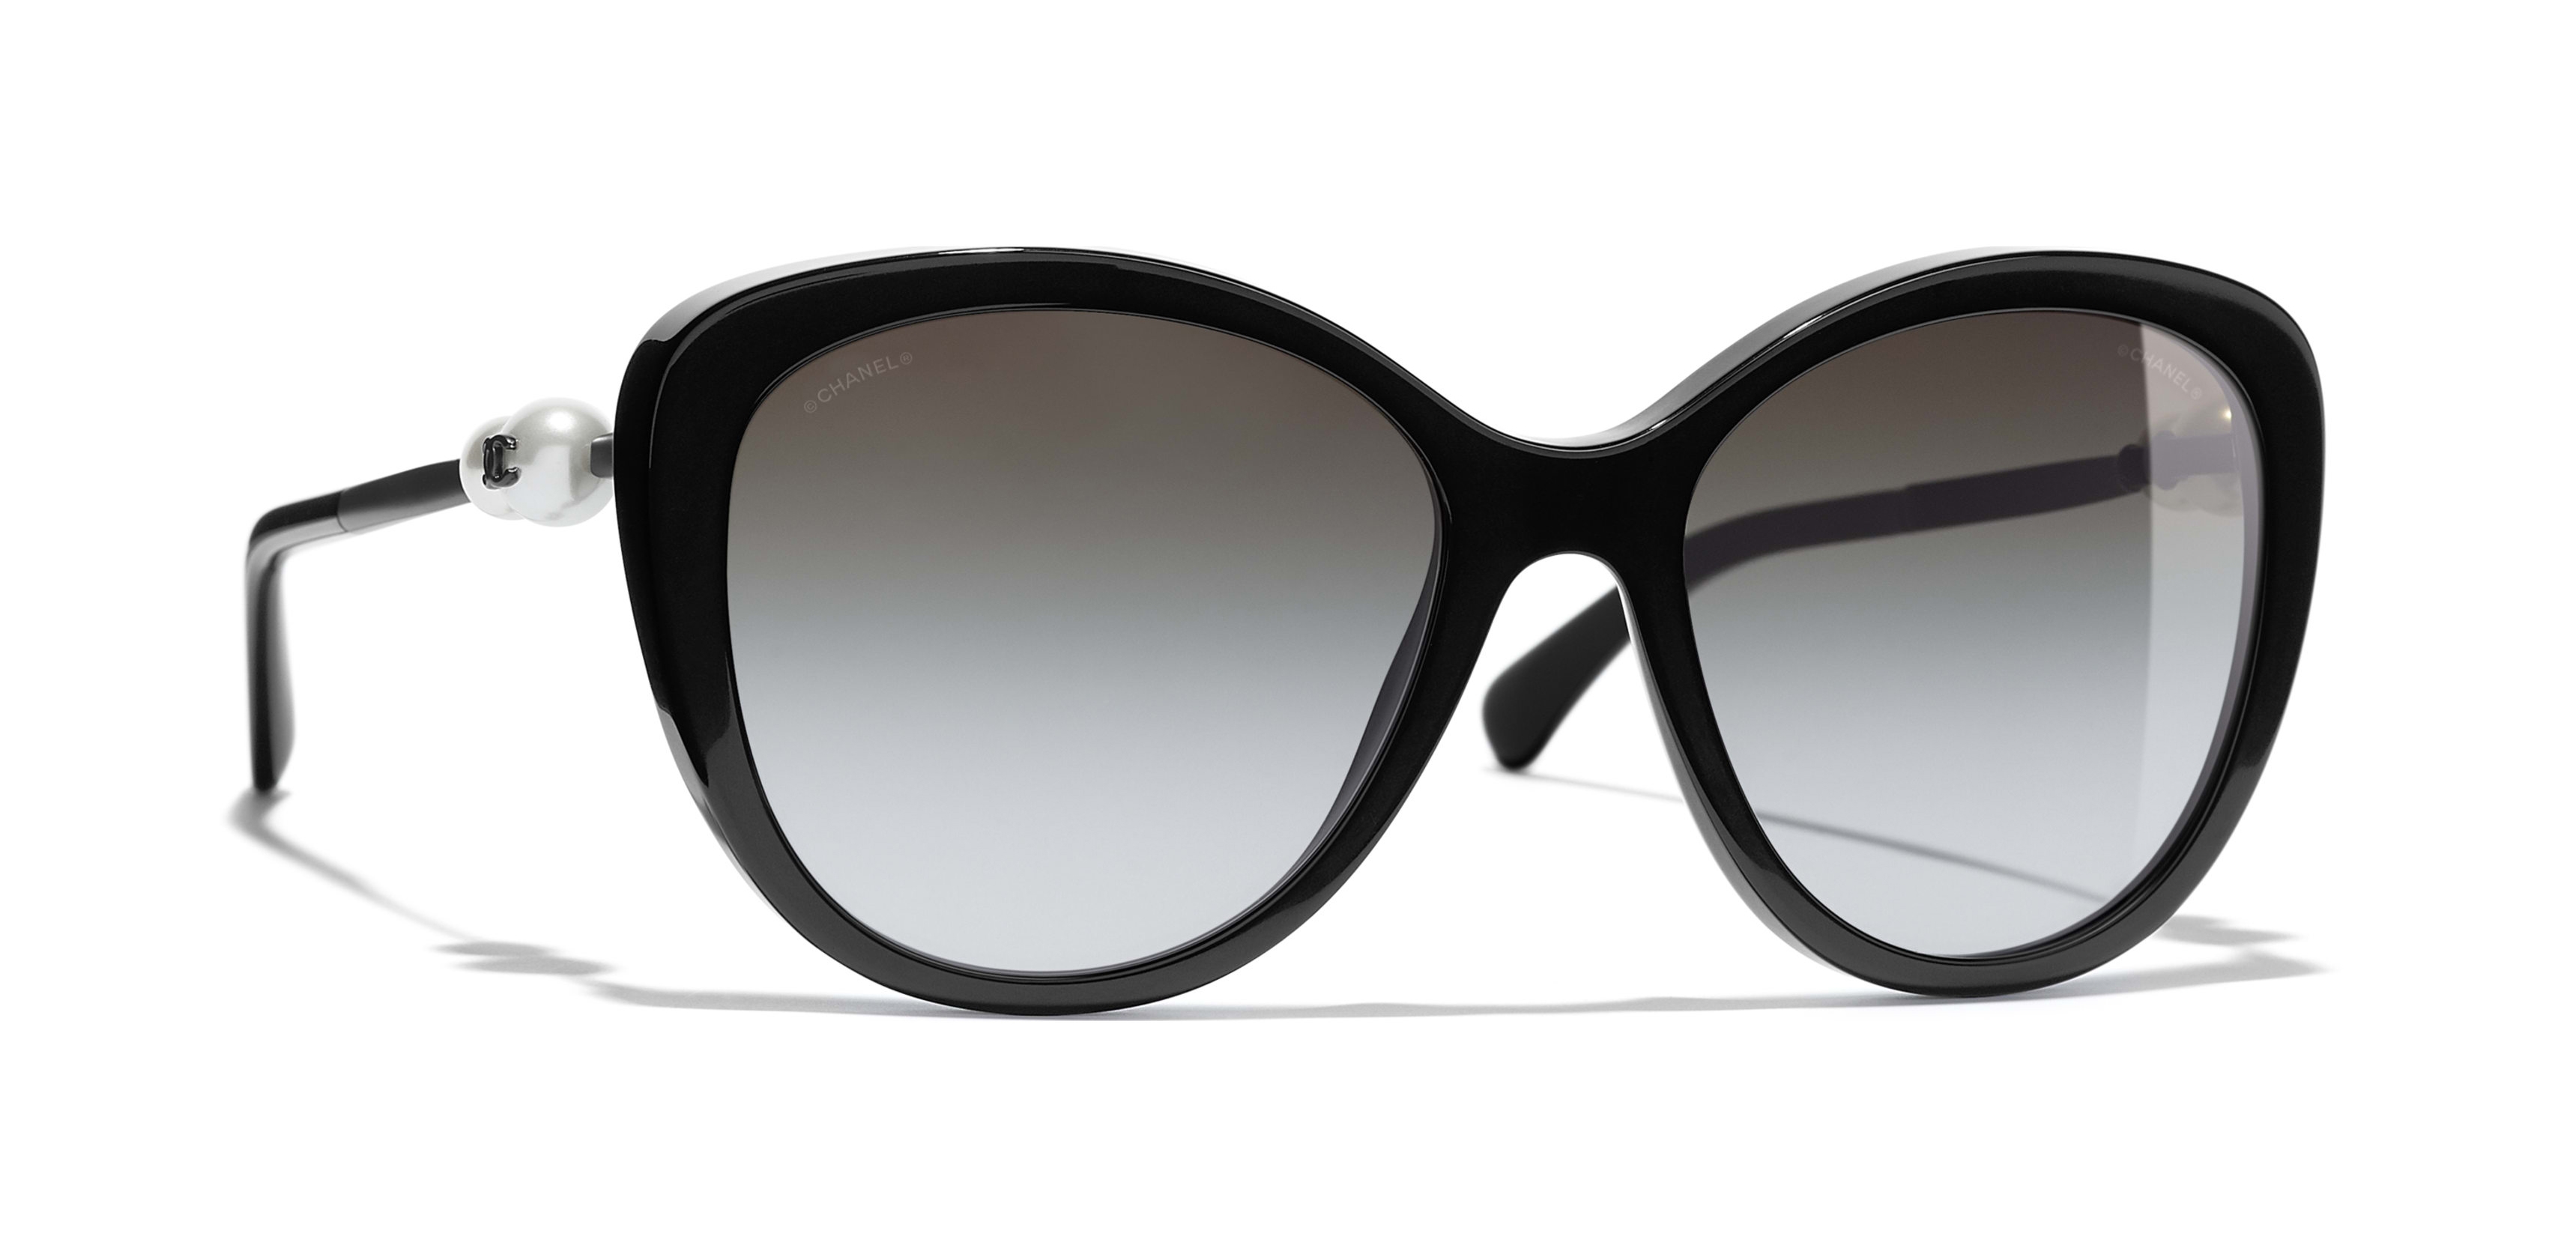 Chanel - Butterfly Sunglasses - Black Gray Polarized - Chanel Eyewear -  Avvenice